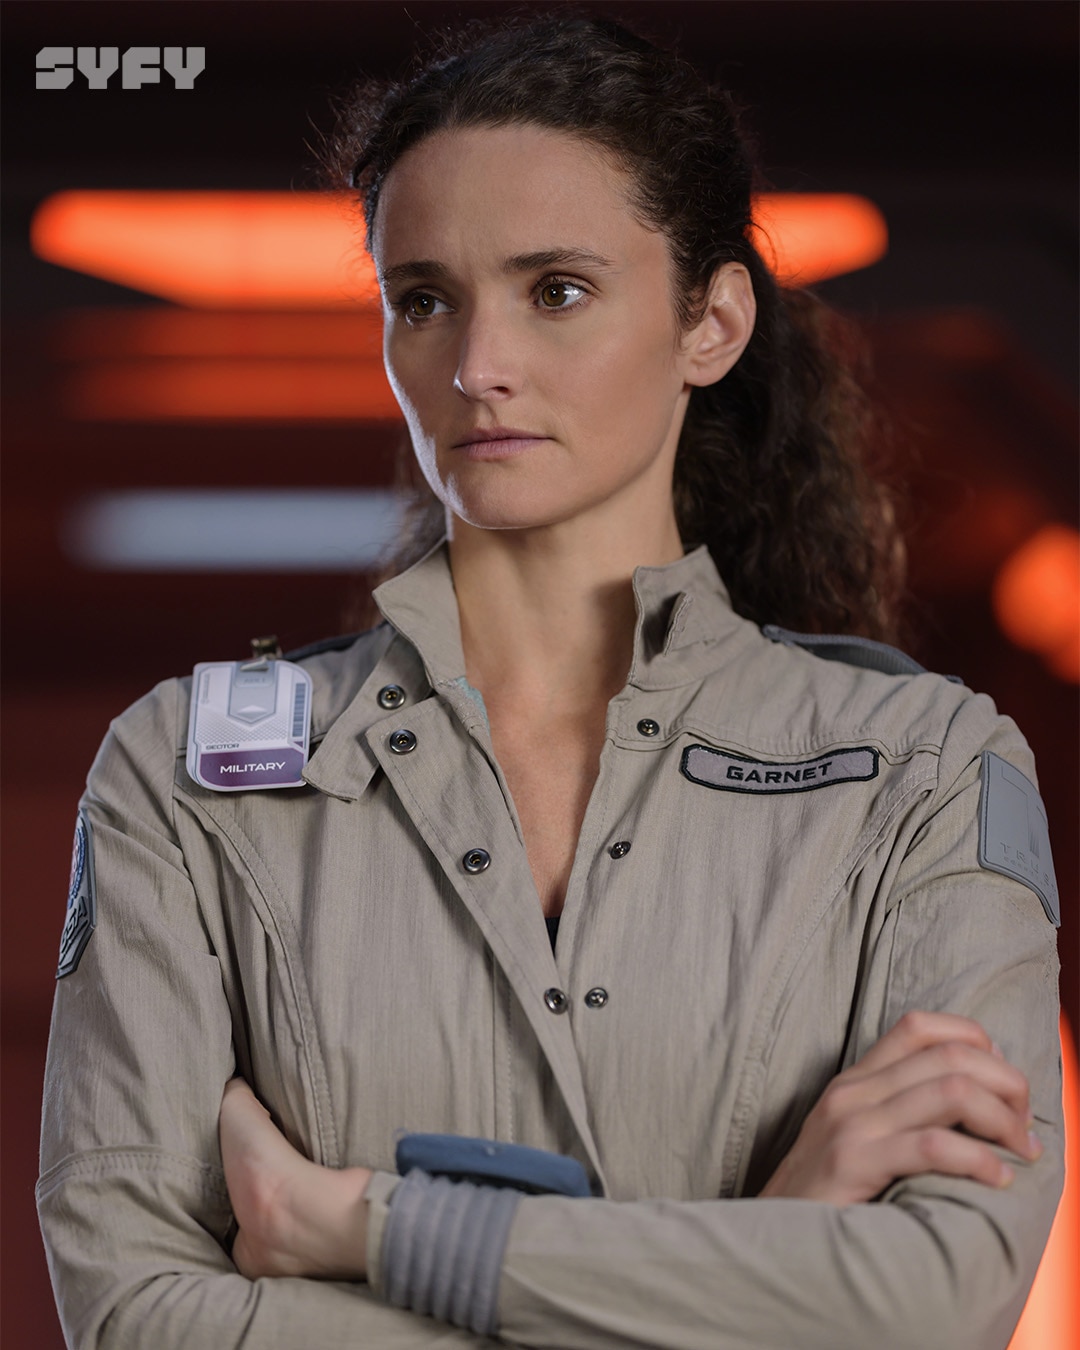 Christie Burke as Lt. Sharon Garnet in The Ark